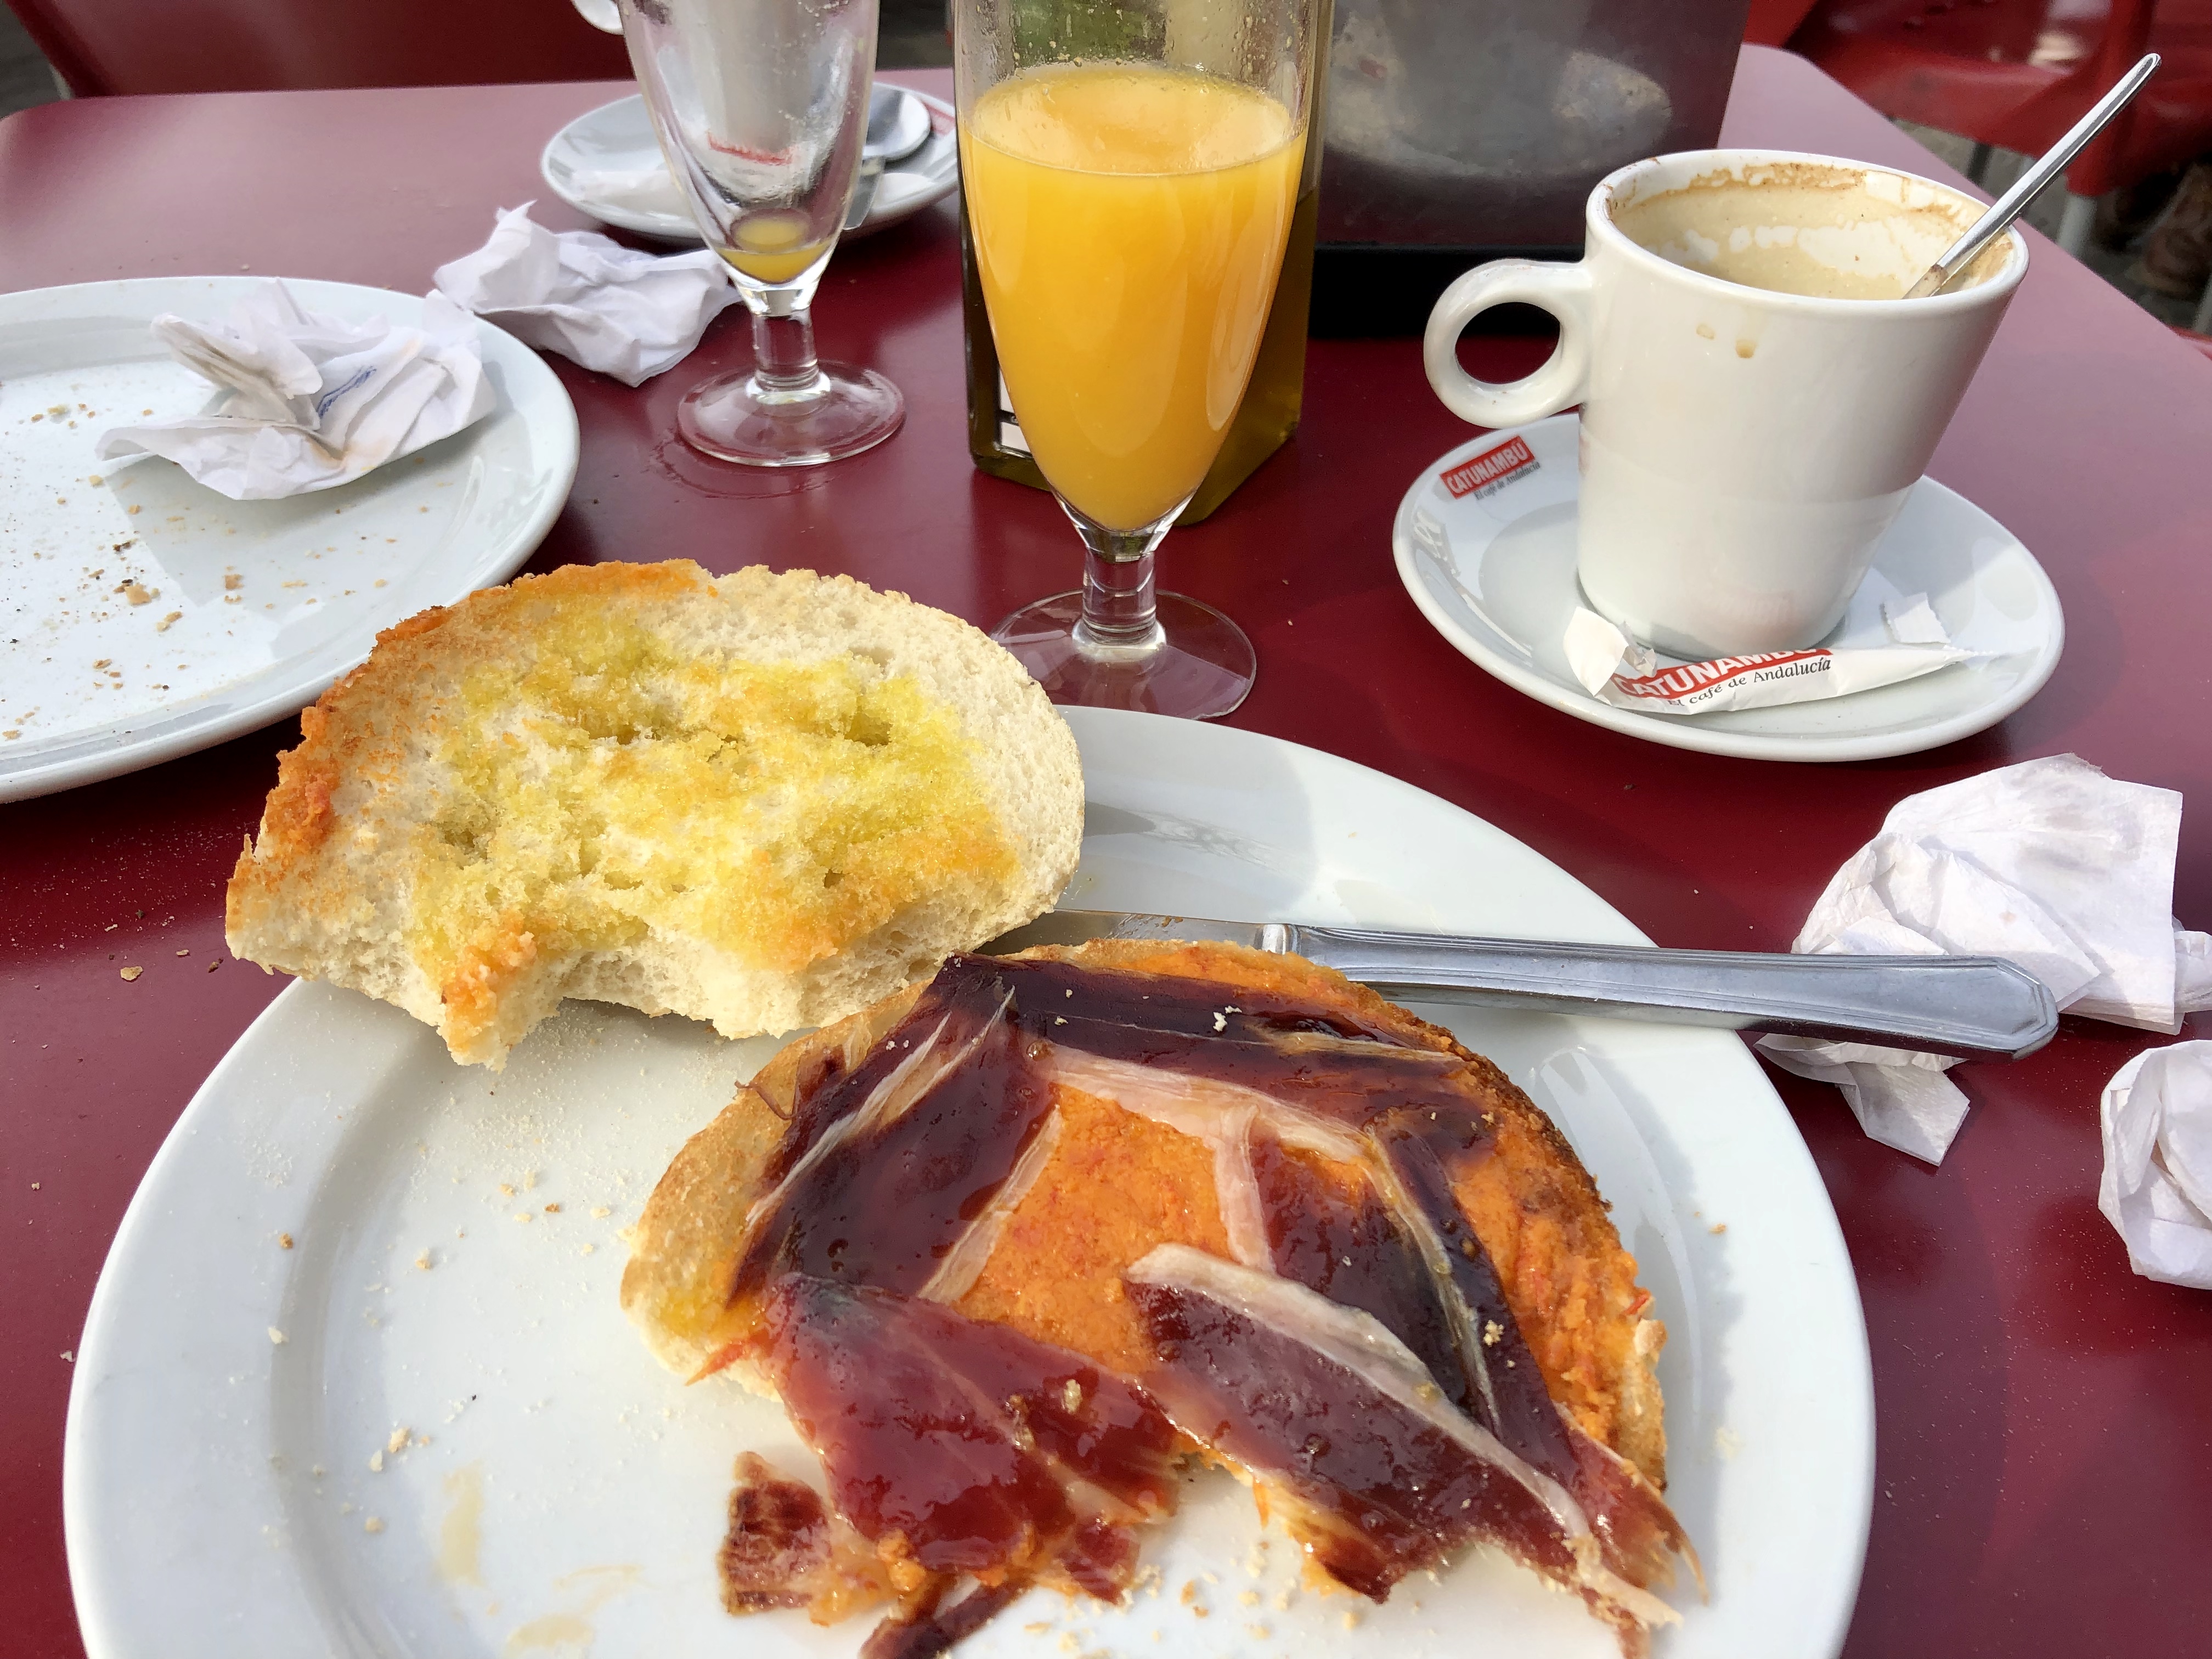 Enjoying a typical breakfast in Seville!